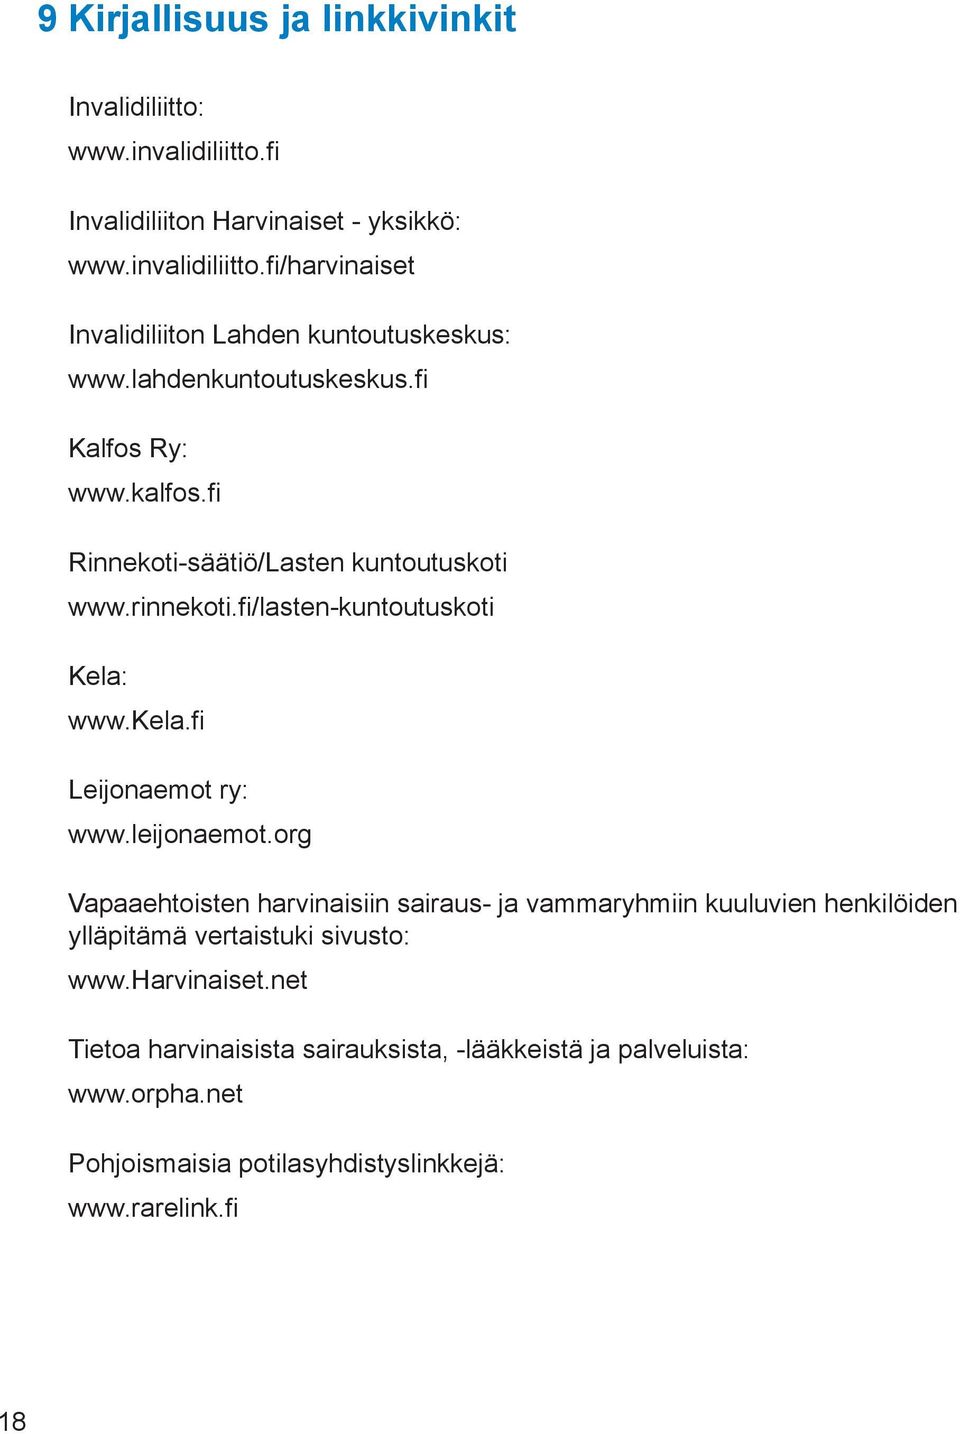 fi Leijonaemot ry: www.leijonaemot.org Vapaaehtoisten harvinaisiin sairaus- ja vammaryhmiin kuuluvien henkilöiden ylläpitämä vertaistuki sivusto: www.